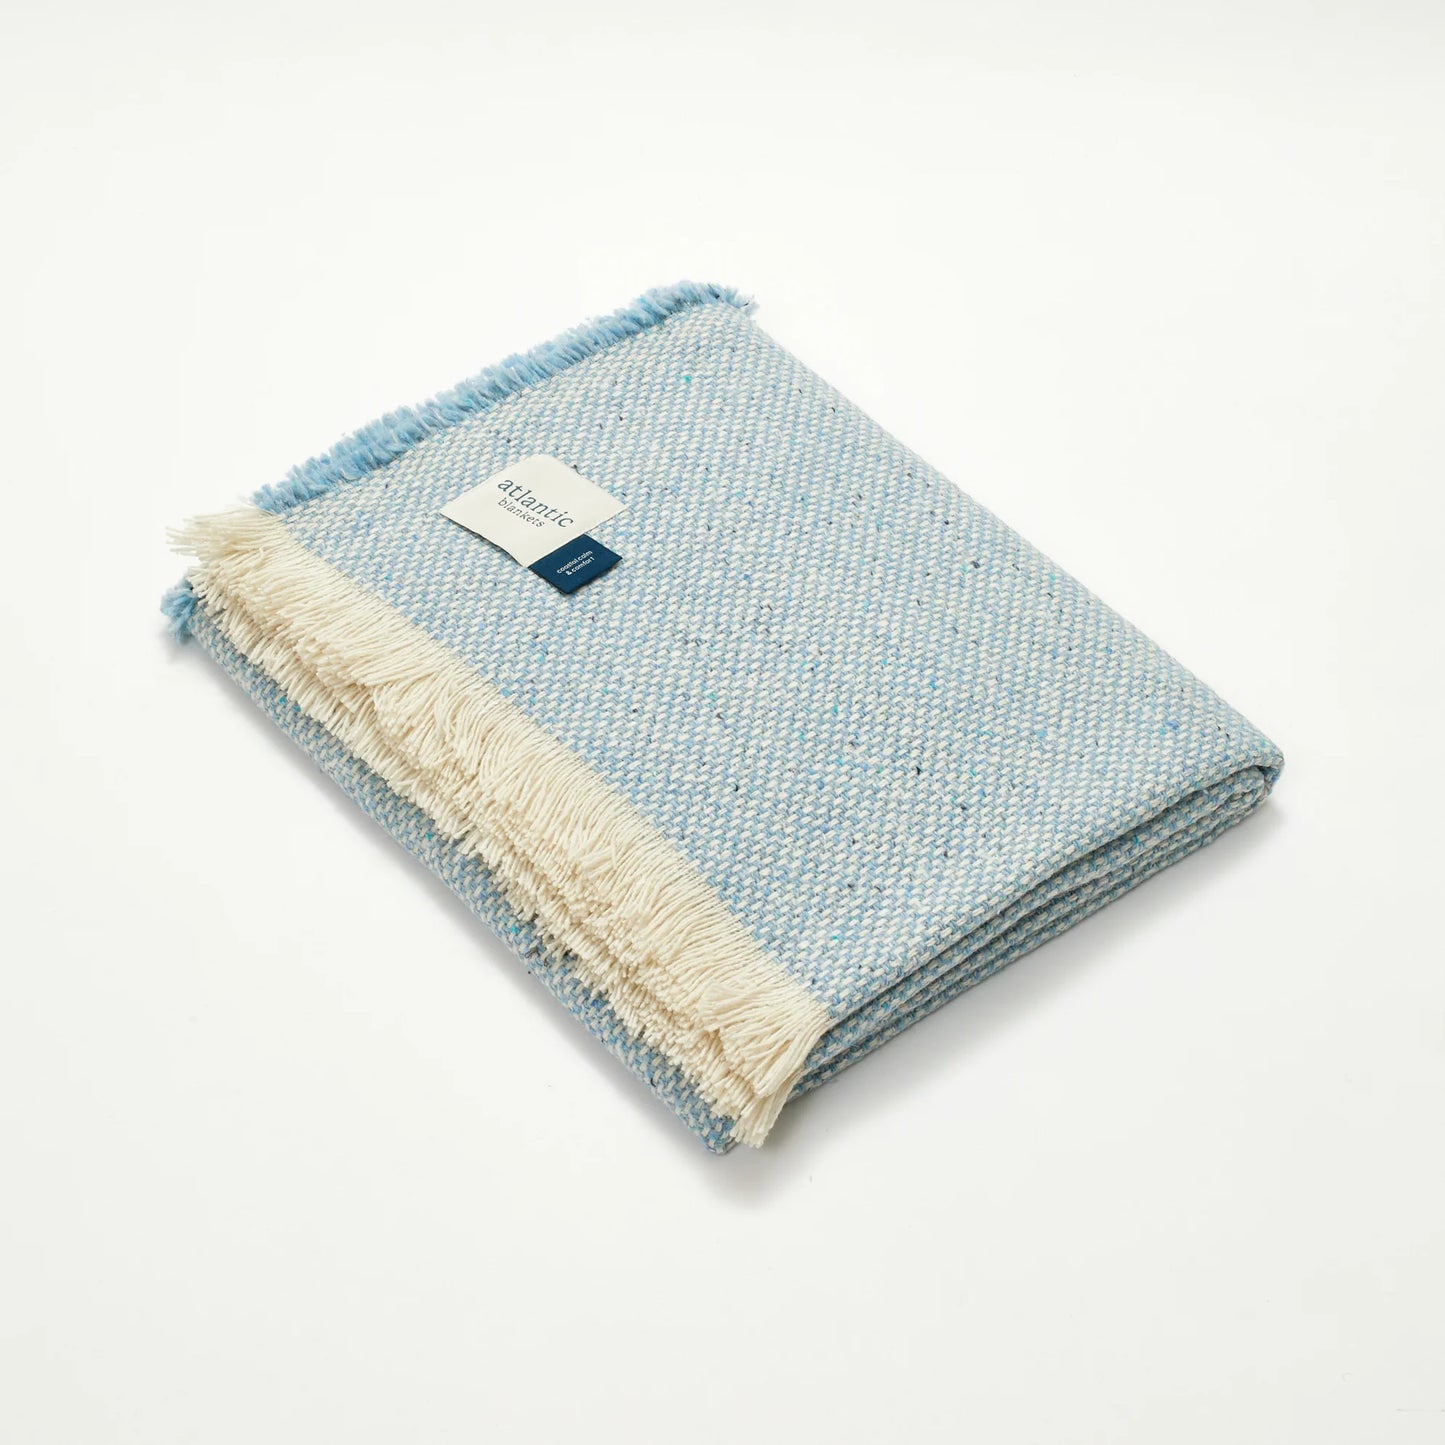 Recycled Wool Blanket - Coastal Blue